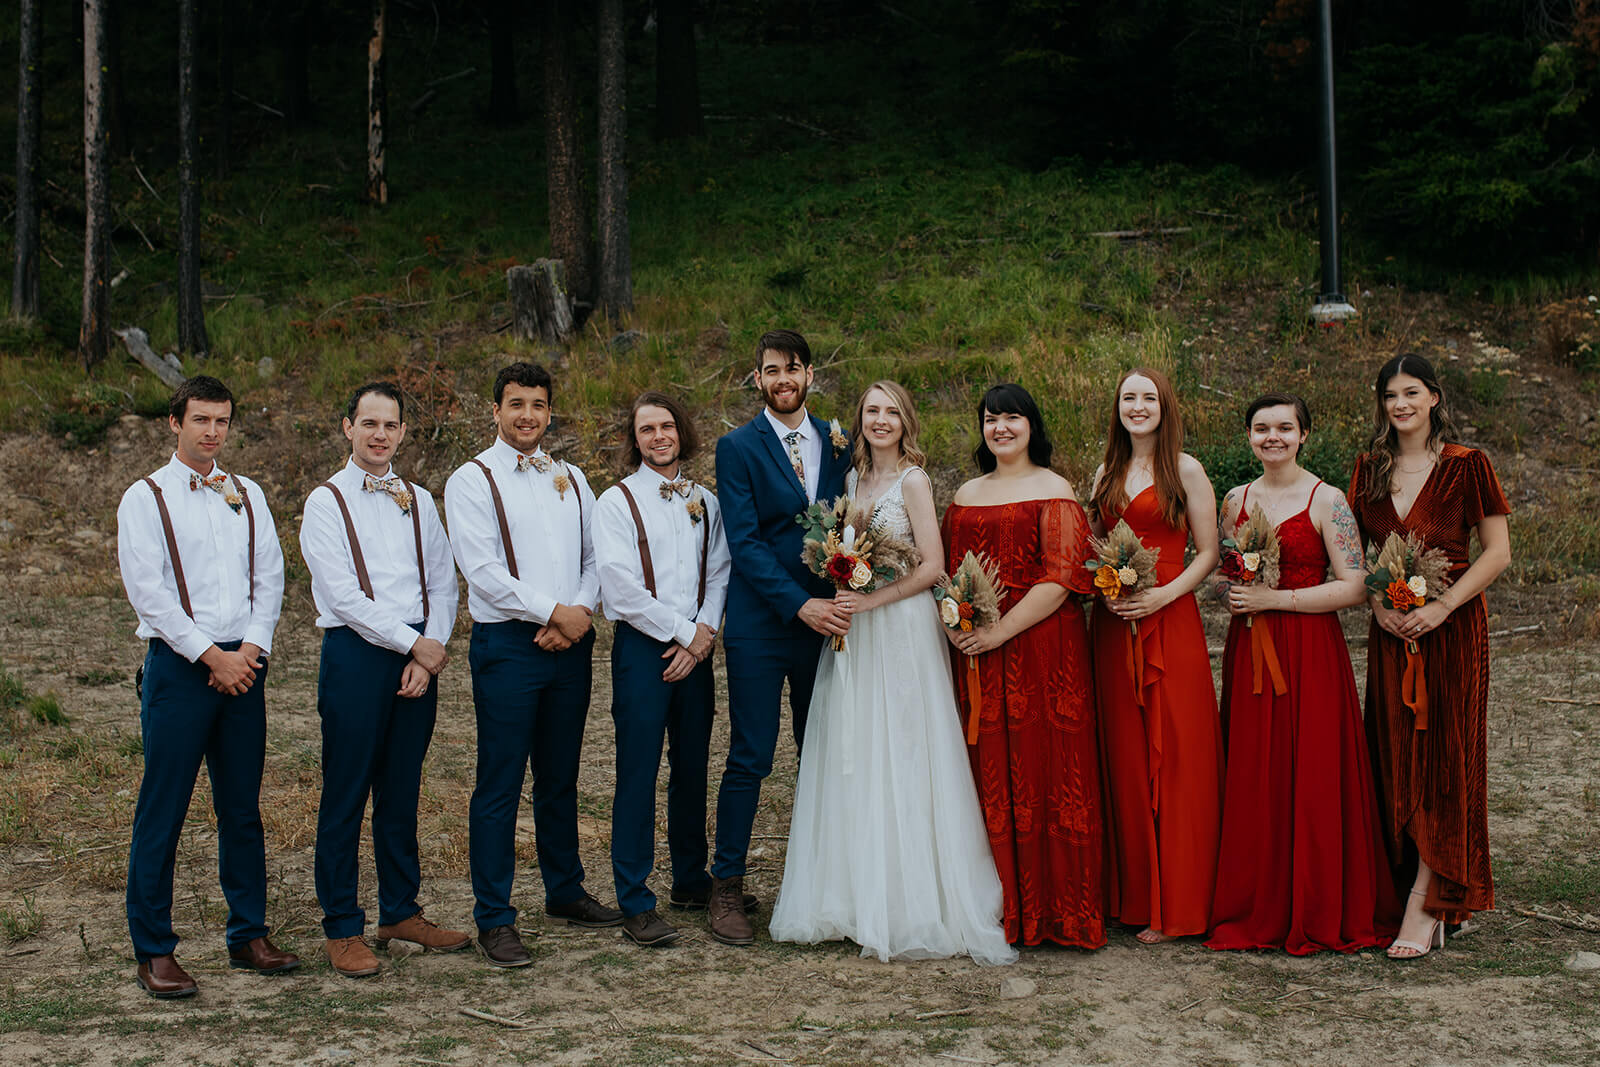 Wedding party portraits at ski resort wedding